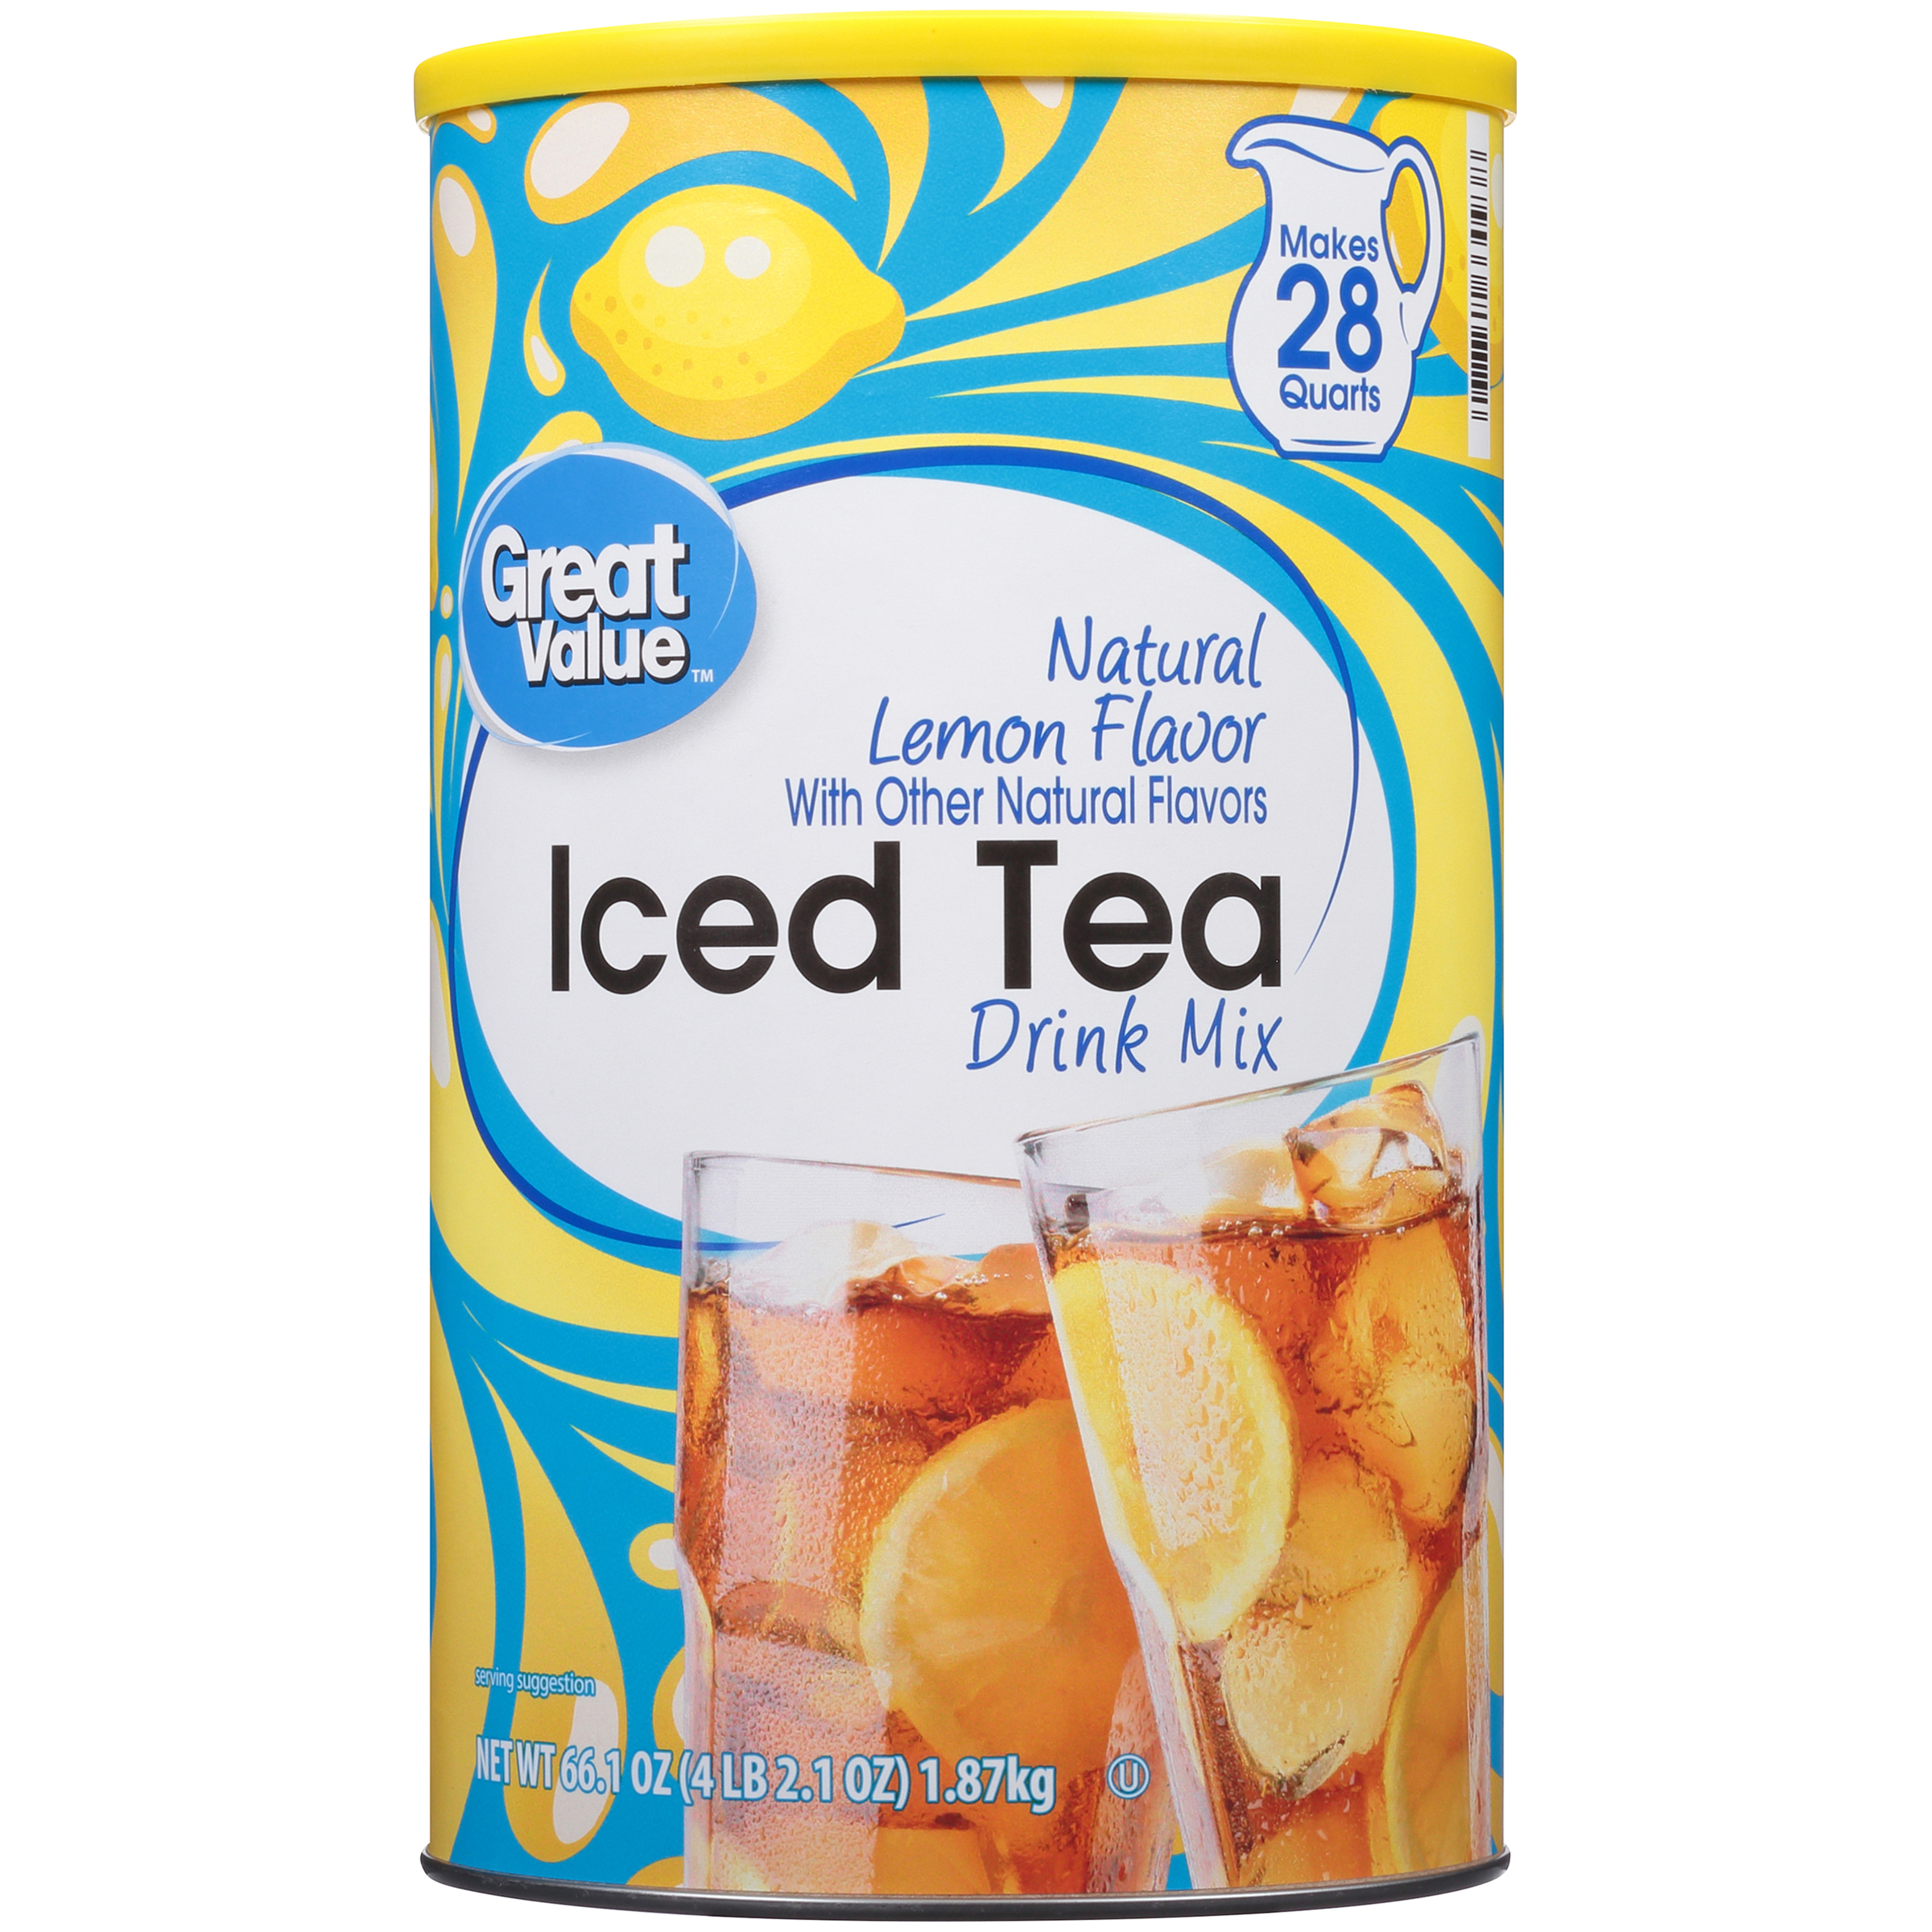 Great Value Natural Lemon Flavor Iced Tea Drink Mix, 66.1 oz - image 3 of 12